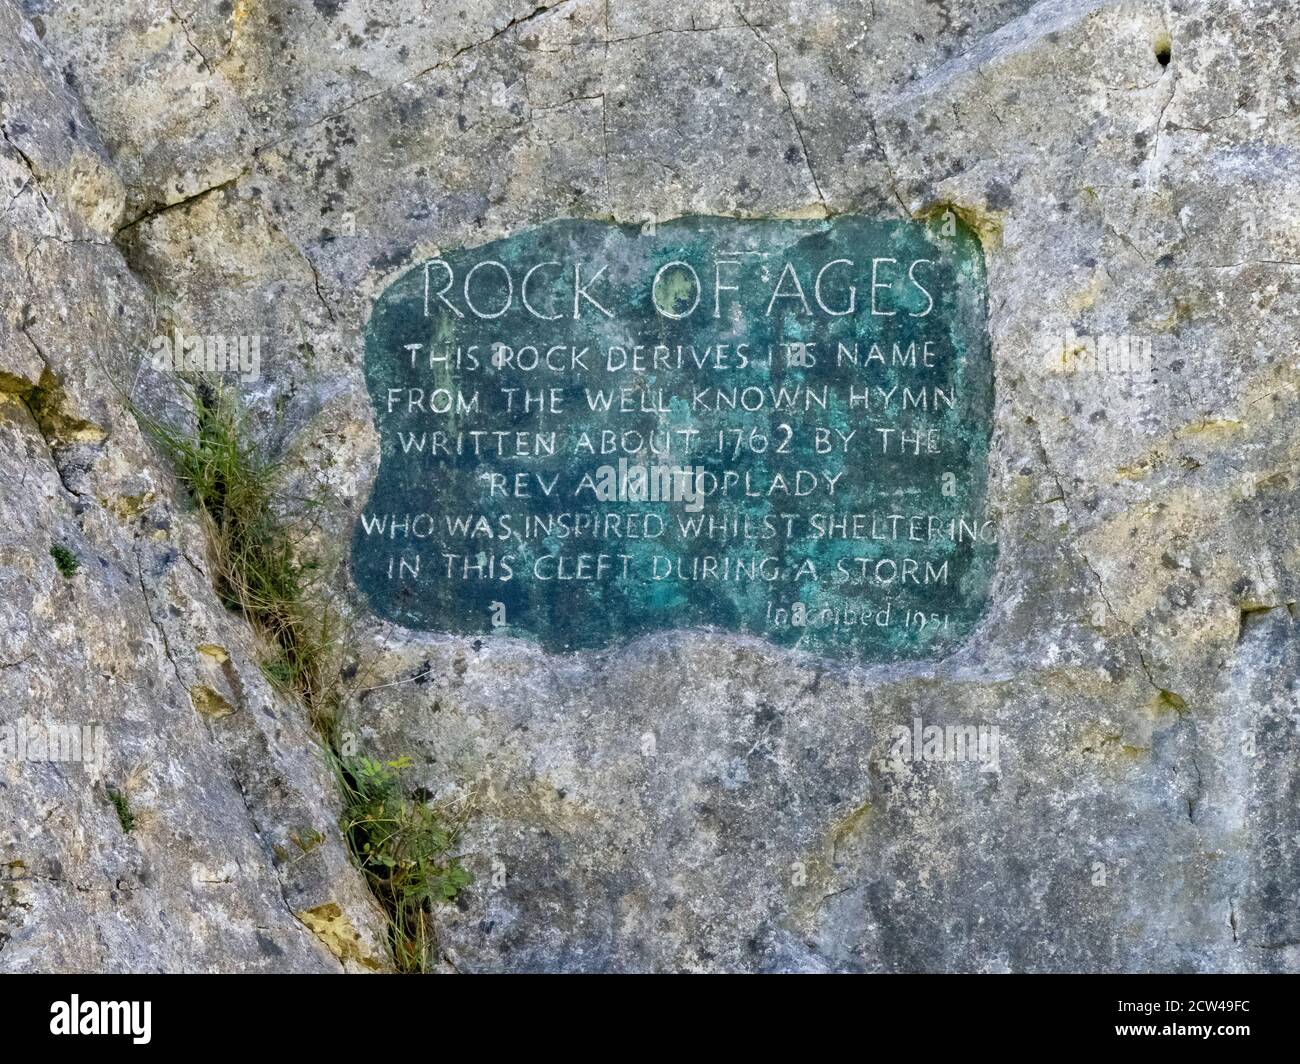 Placa en la Roca de las edades que conmemora a un Toplady's. Un himno muy querido en Burrington Combe en el Mendip Hills Somerset REINO UNIDO Foto de stock